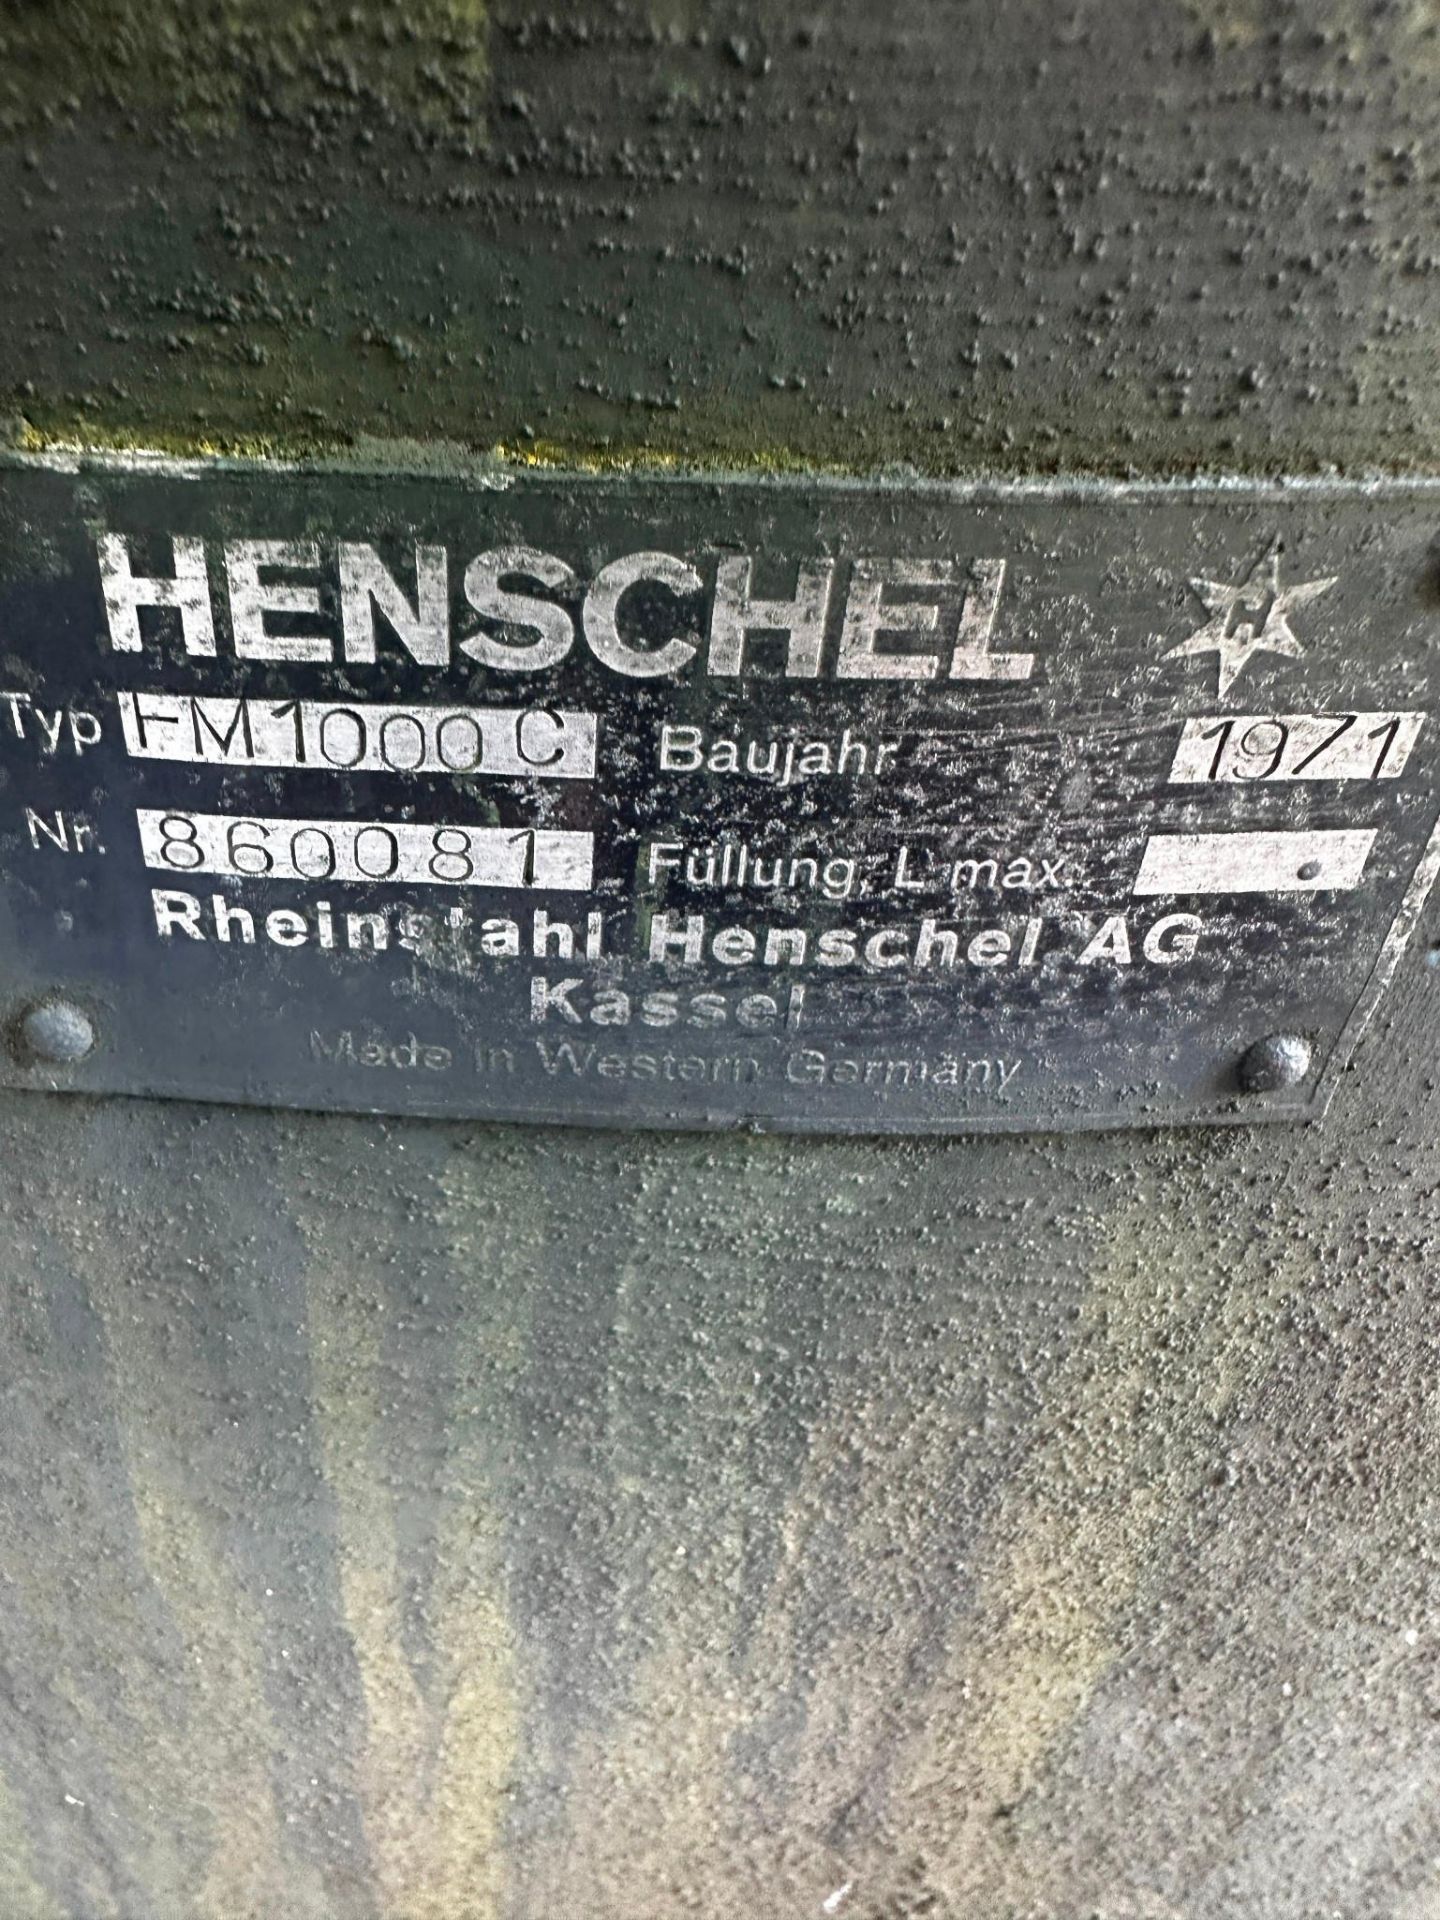 HENSCHEL MODEL FM 1000 C HIGH INTENSITY MIXER - Image 6 of 13